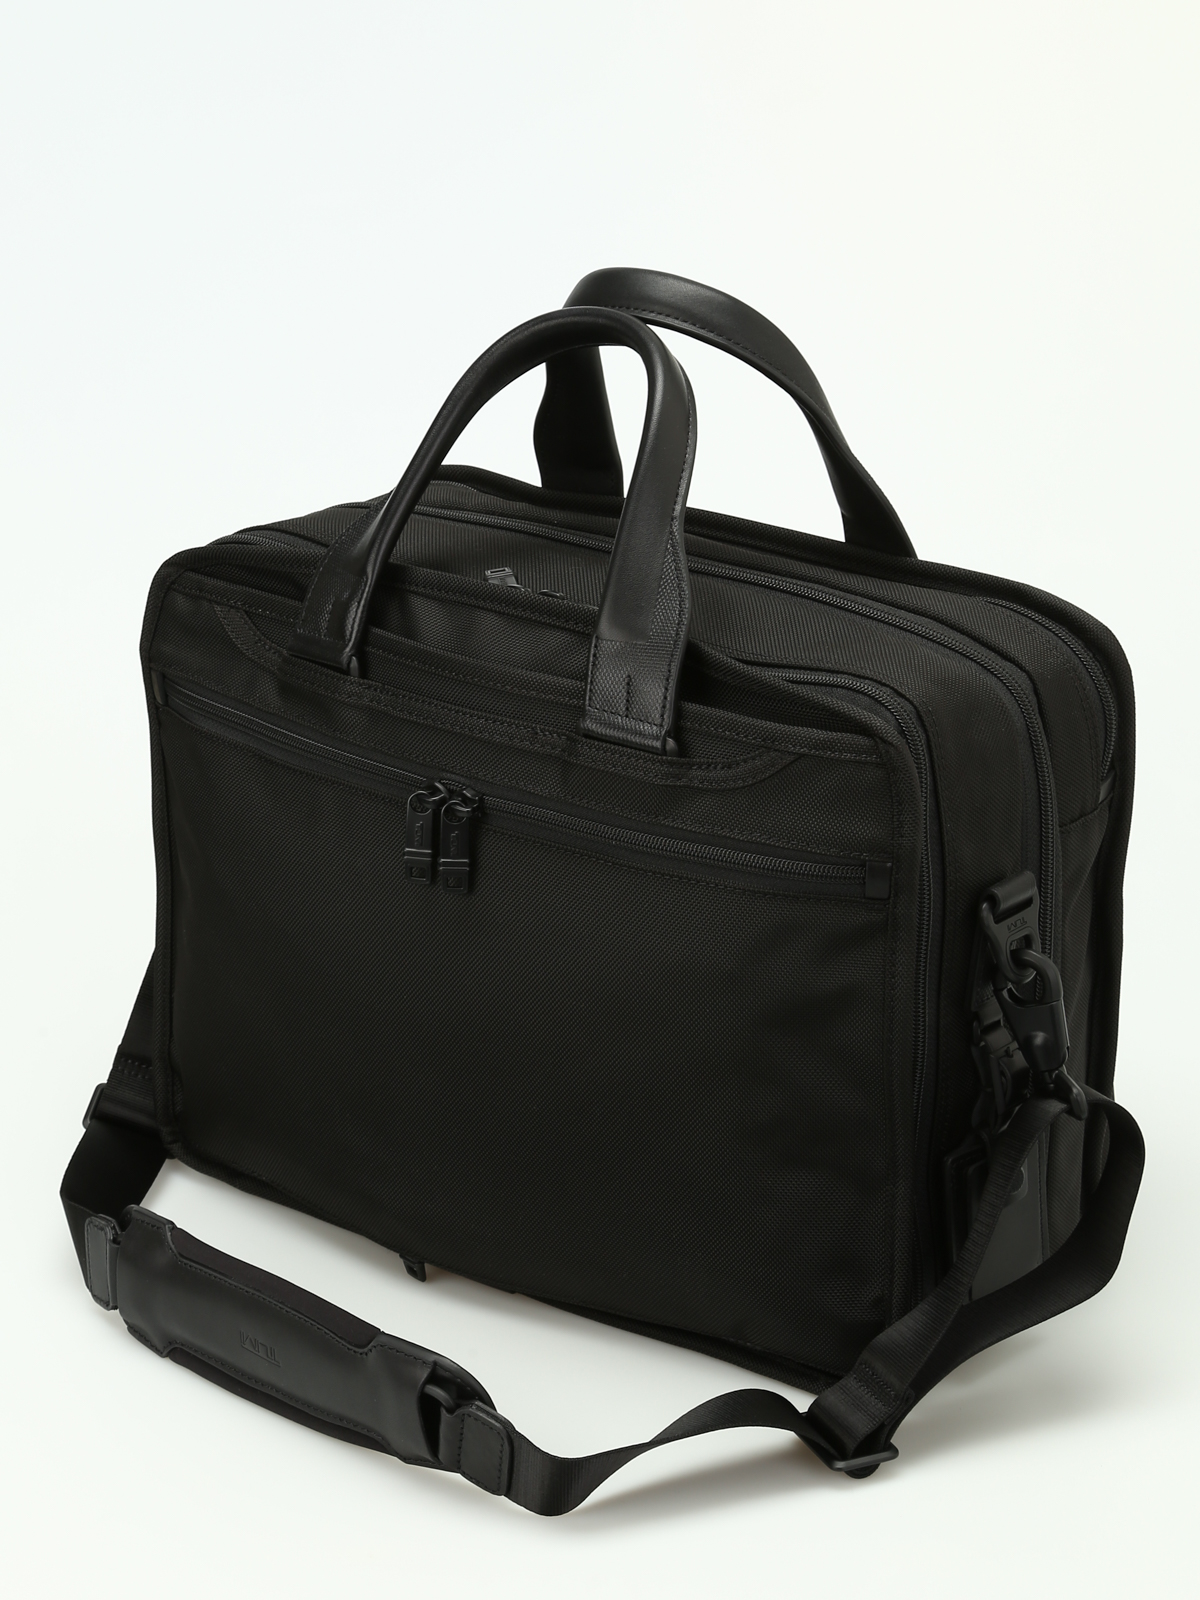 Laptop bags & briefcases Tumi - Alpha 2 expandable laptop briefcase ...